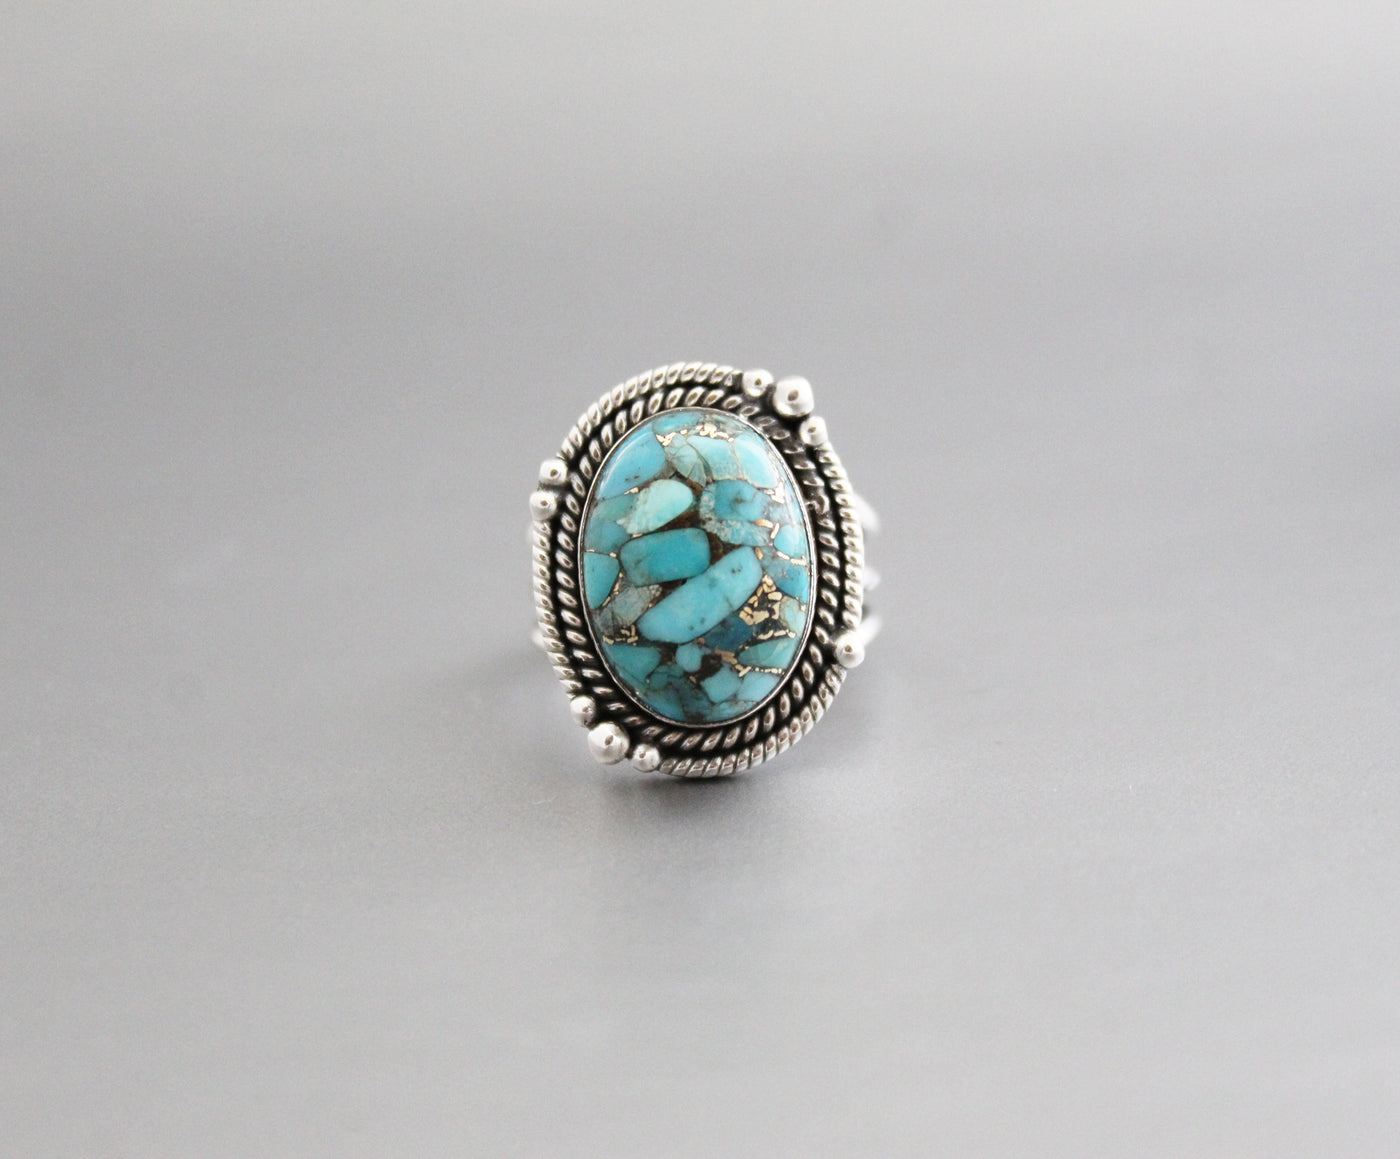 Turquoise Ring, Statement Ring, Gemstone Ring, Copper Turquoise Ring, Natural Organic Gemstone Ring, Blue Gem Ring, Large Silver Rings